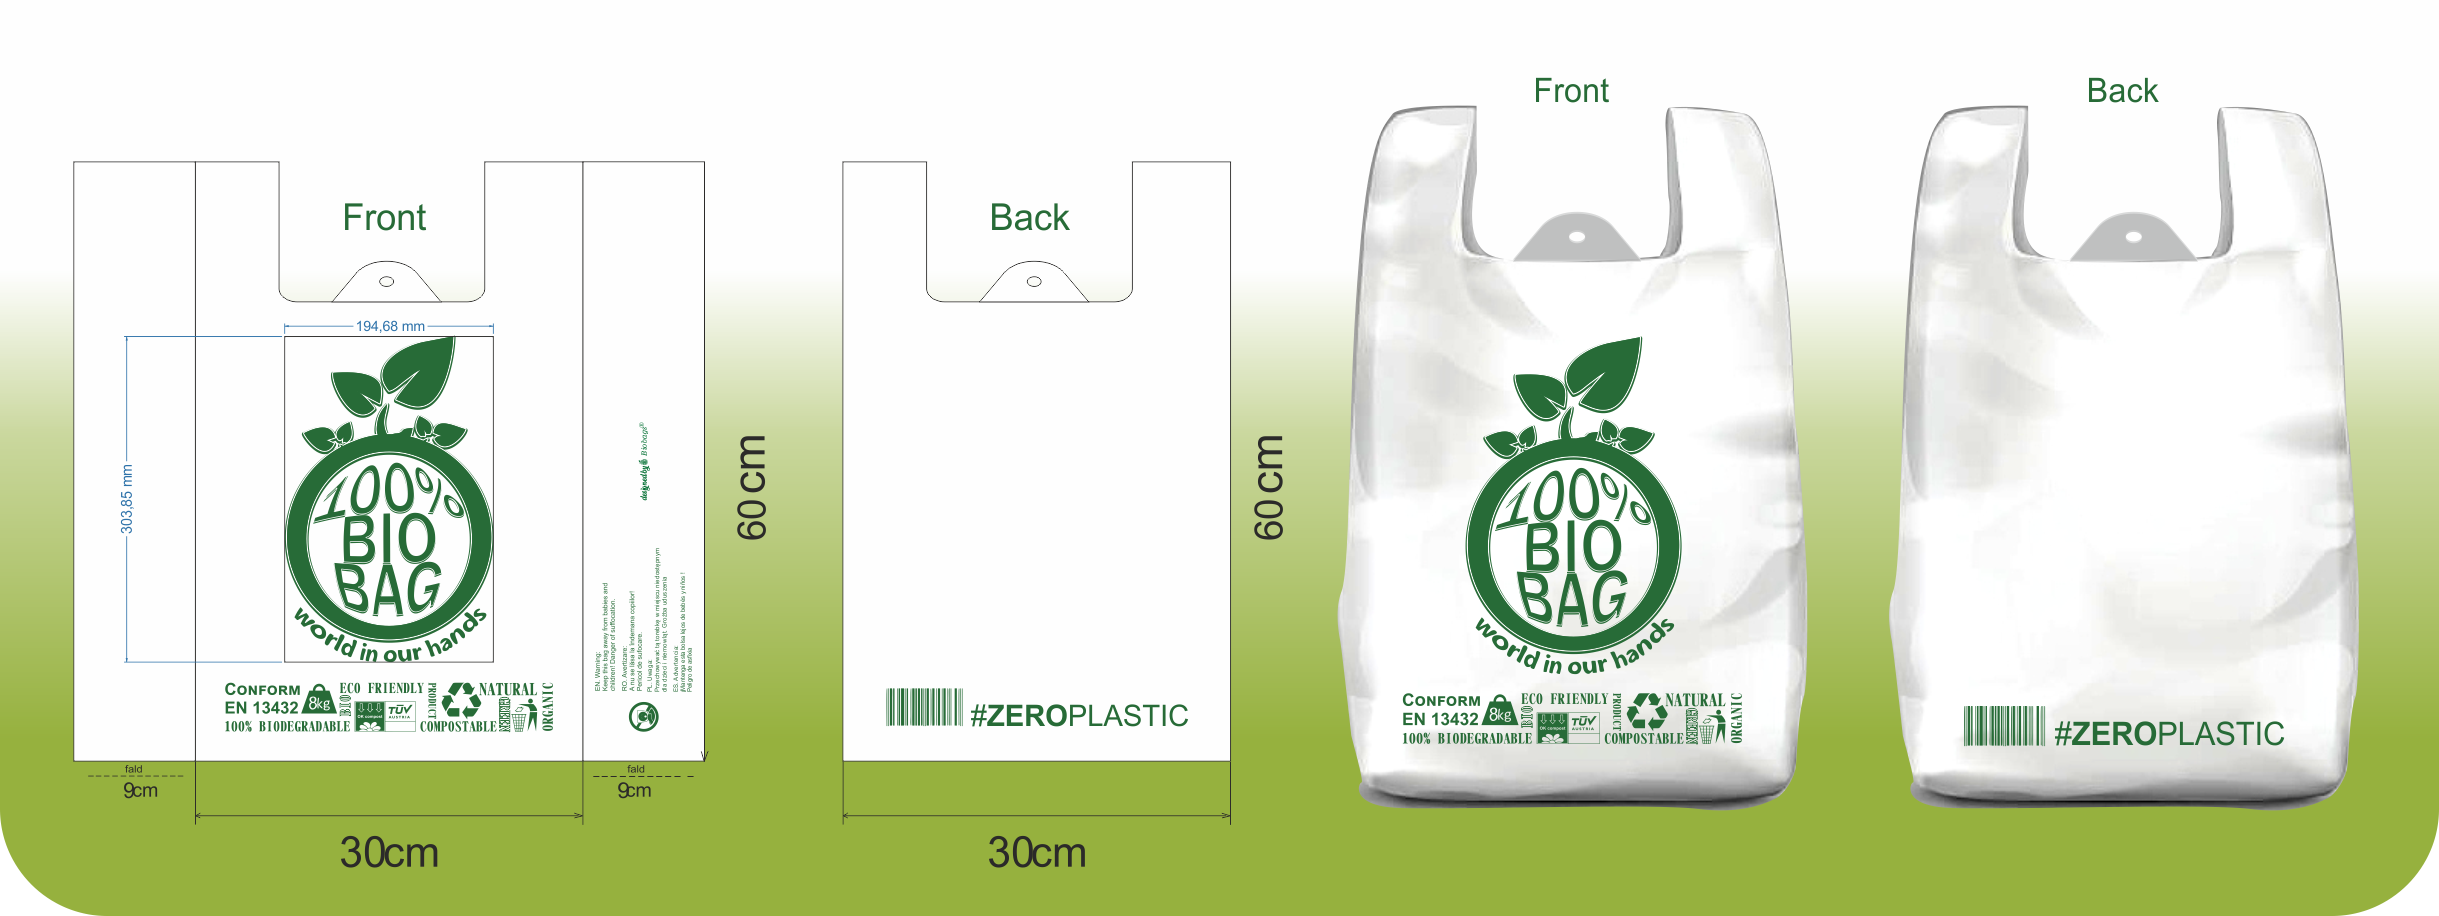 Biobag.eu 8kg template 3v1